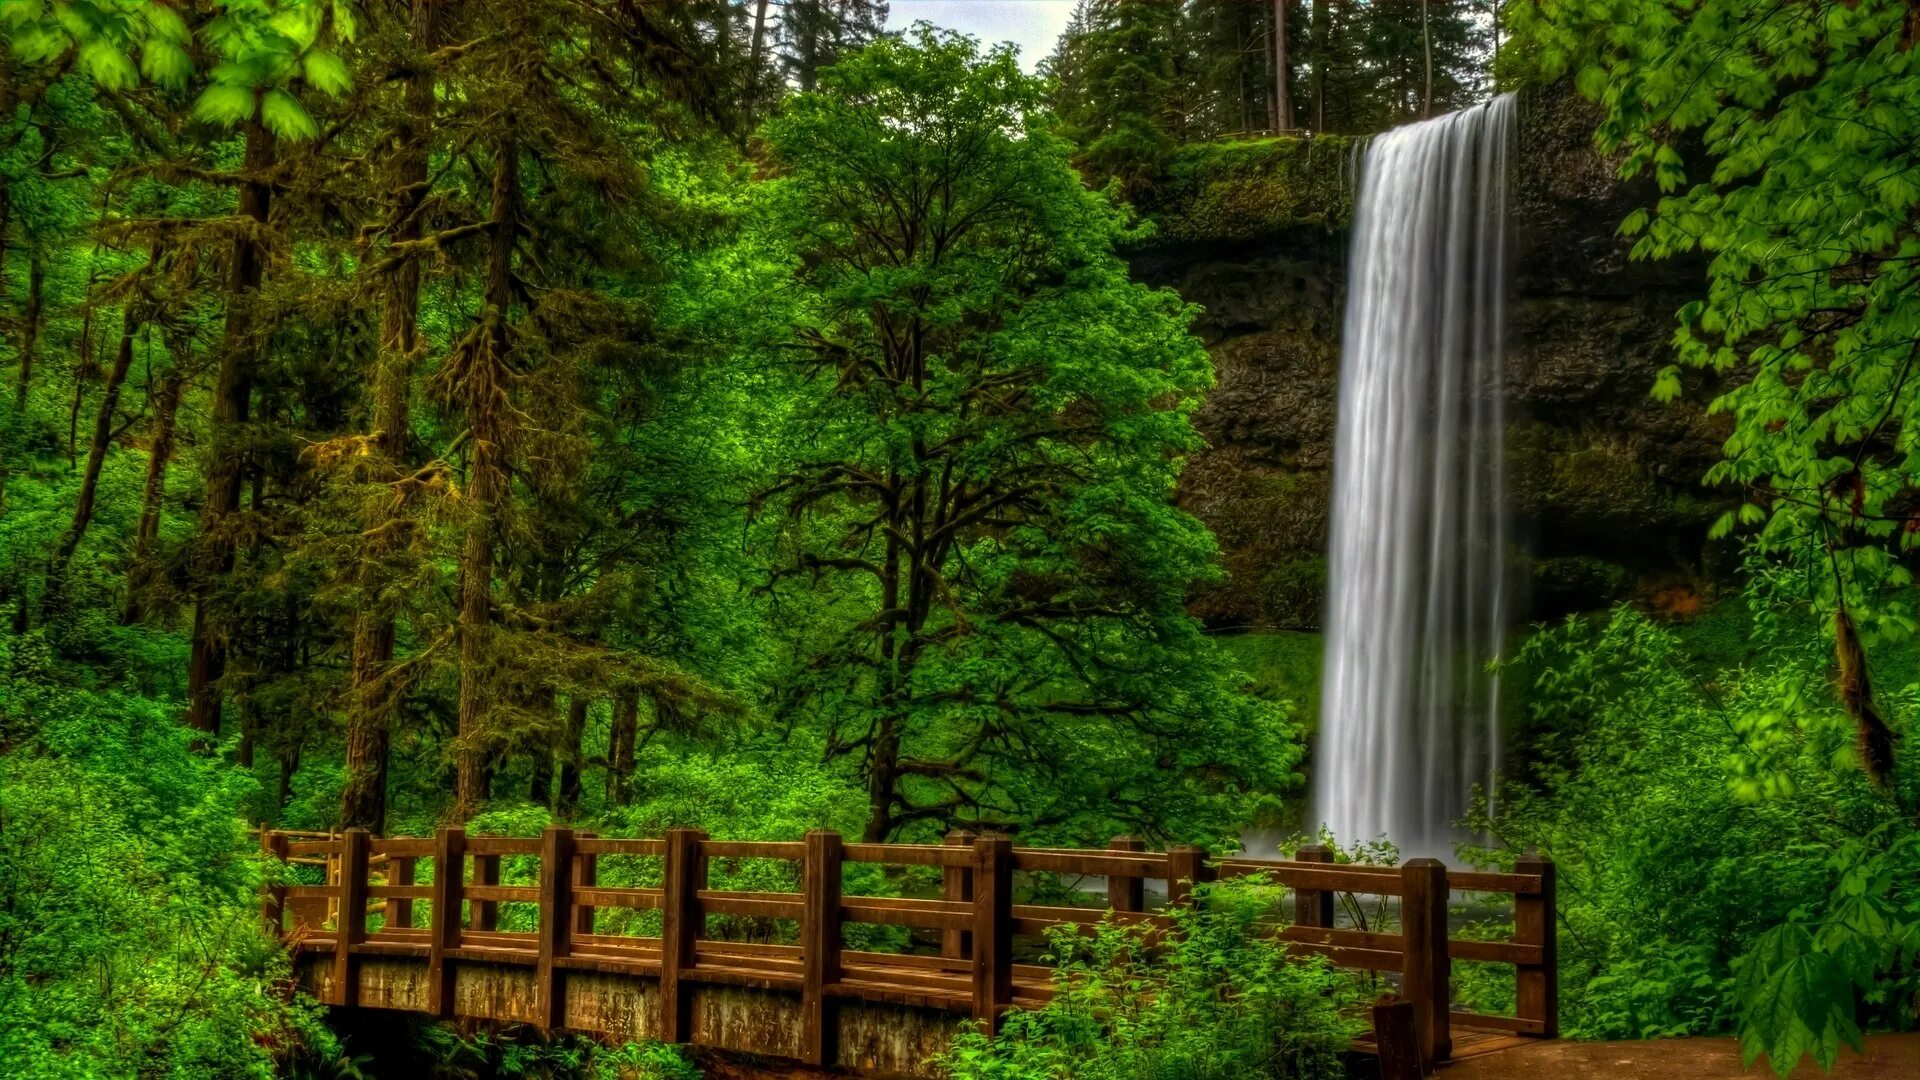 Обои на телефон природа вертикальные высокого качества. Природа. Водопад в лесу. Лесной водопад. Природа с деревьями и водопадами.